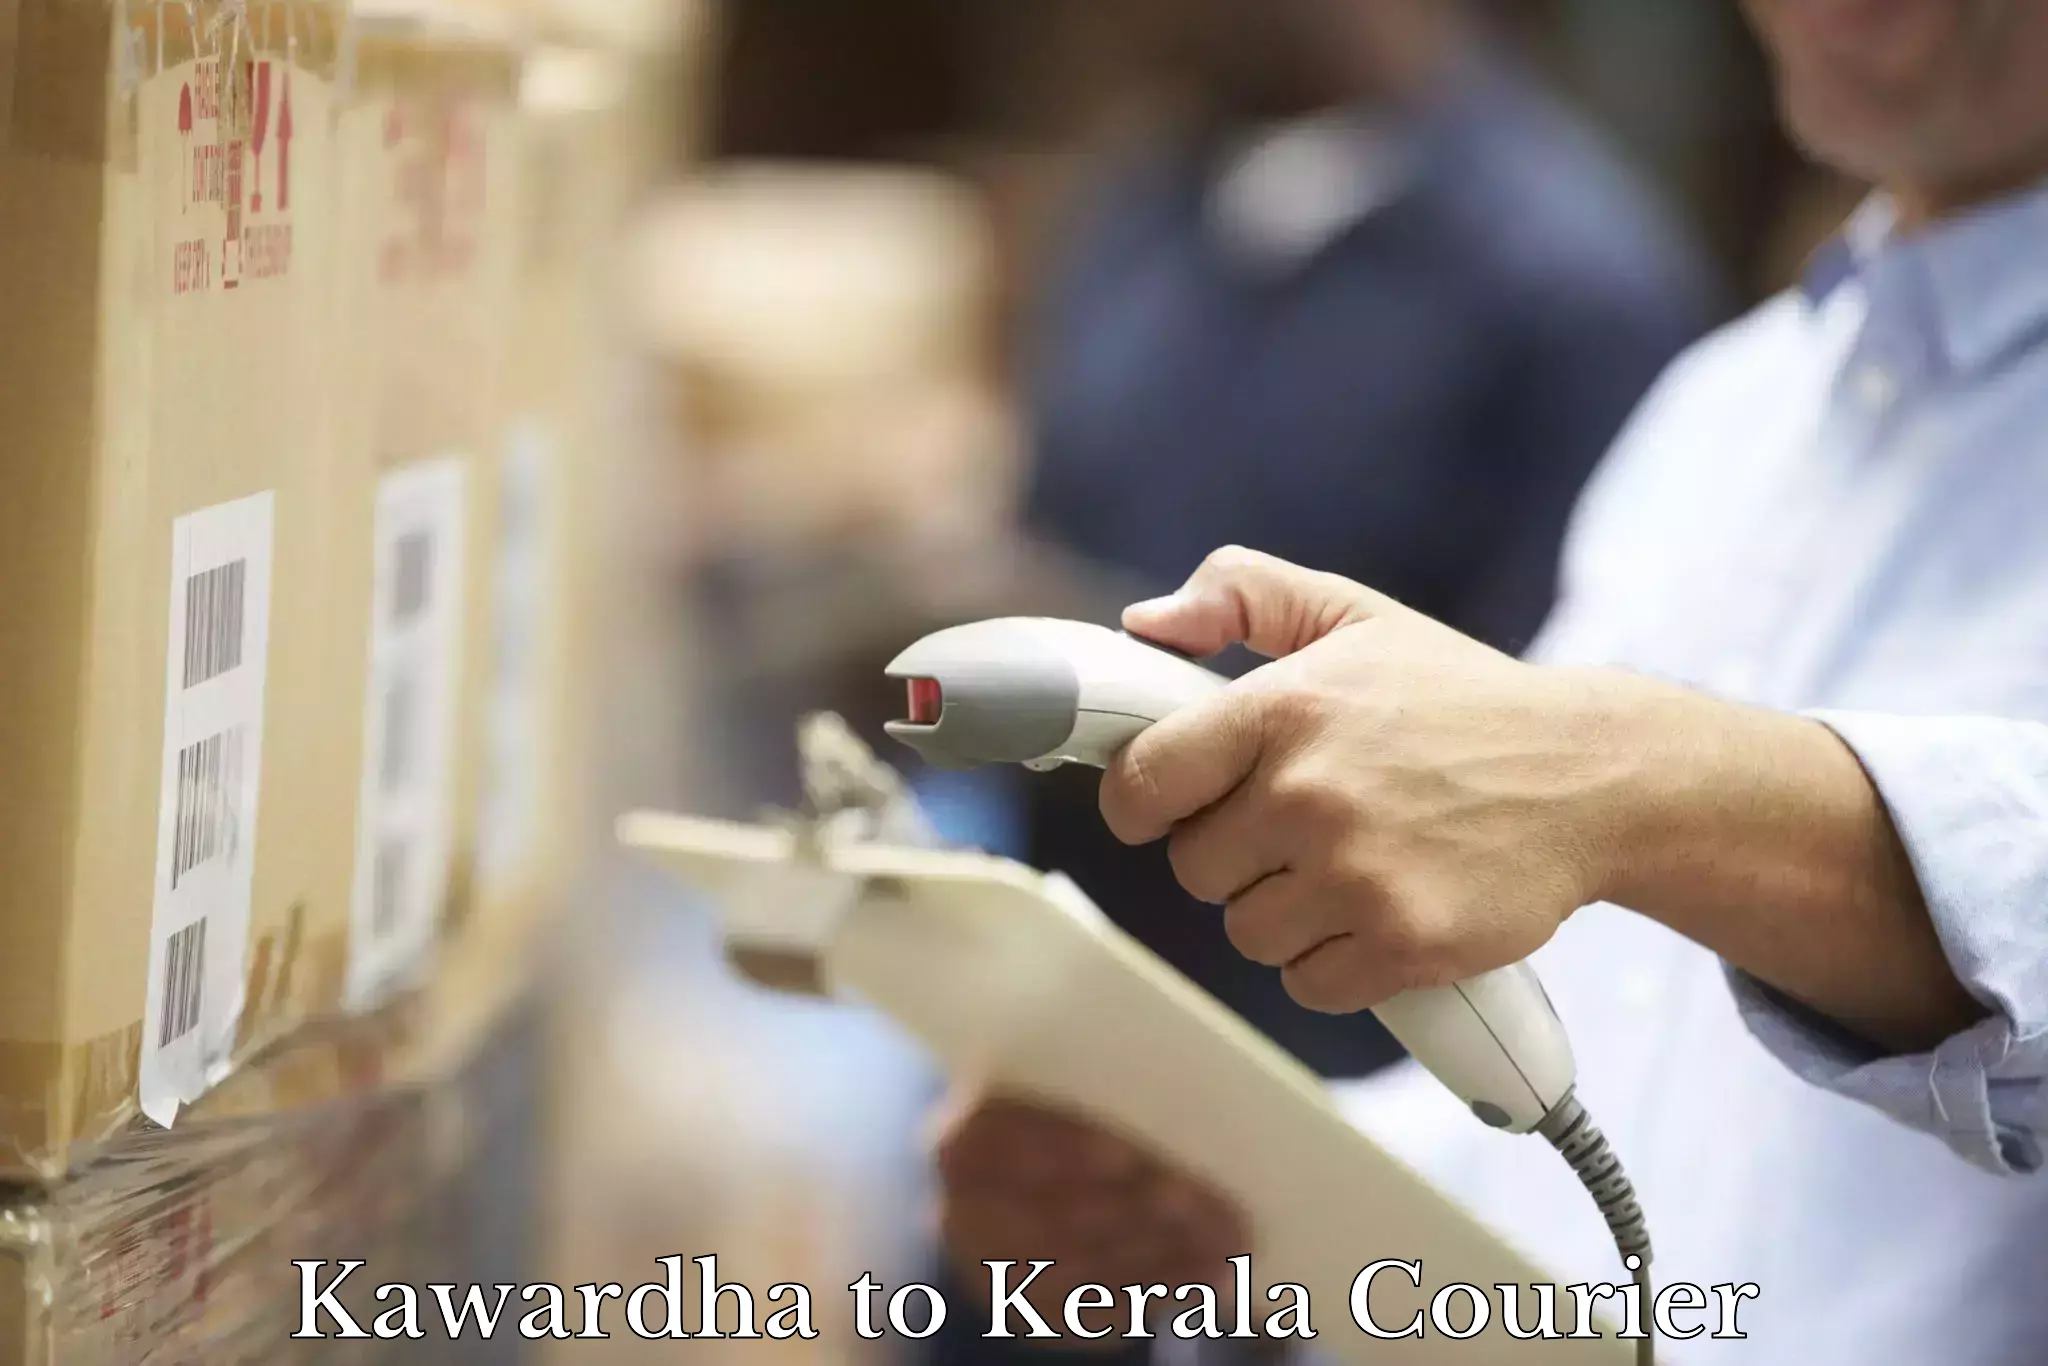 Expedited shipping solutions Kawardha to Kerala